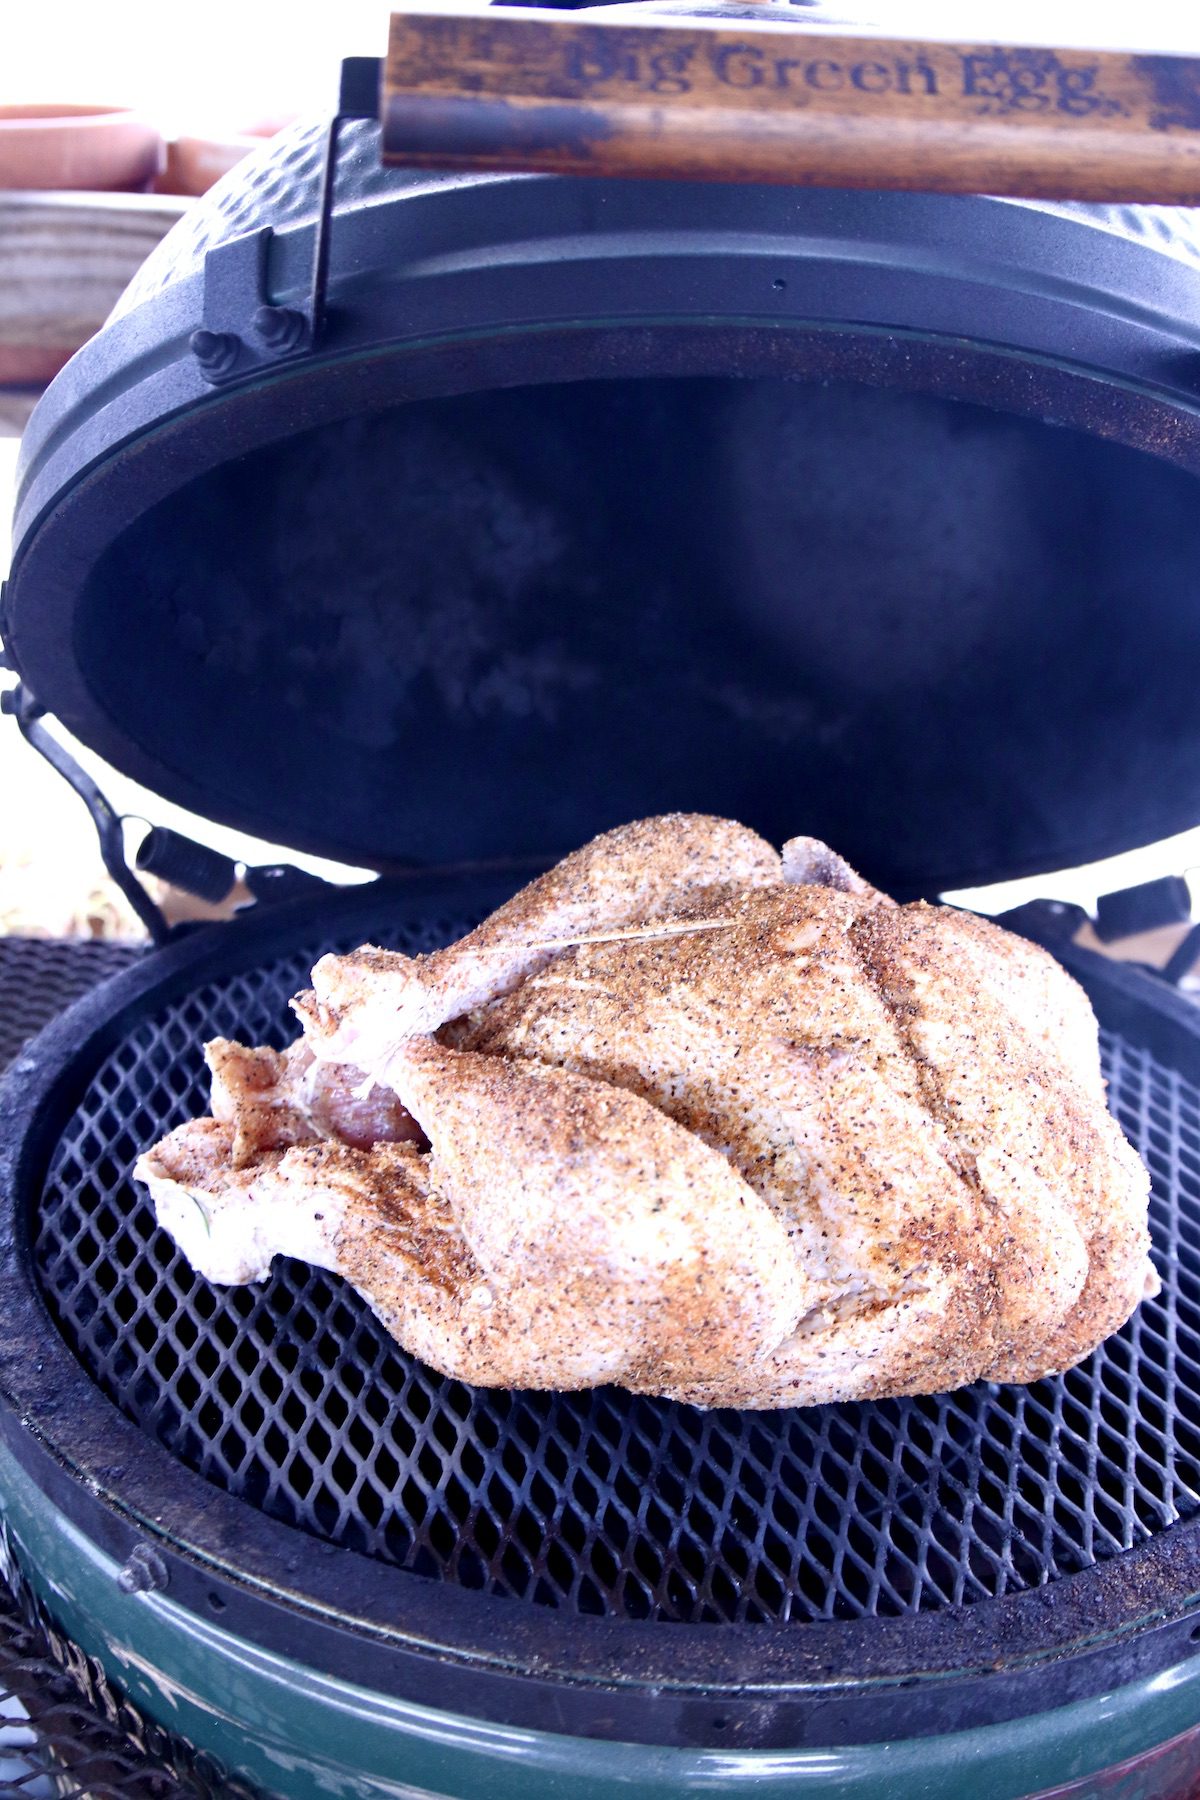 dry rub turkey on grill